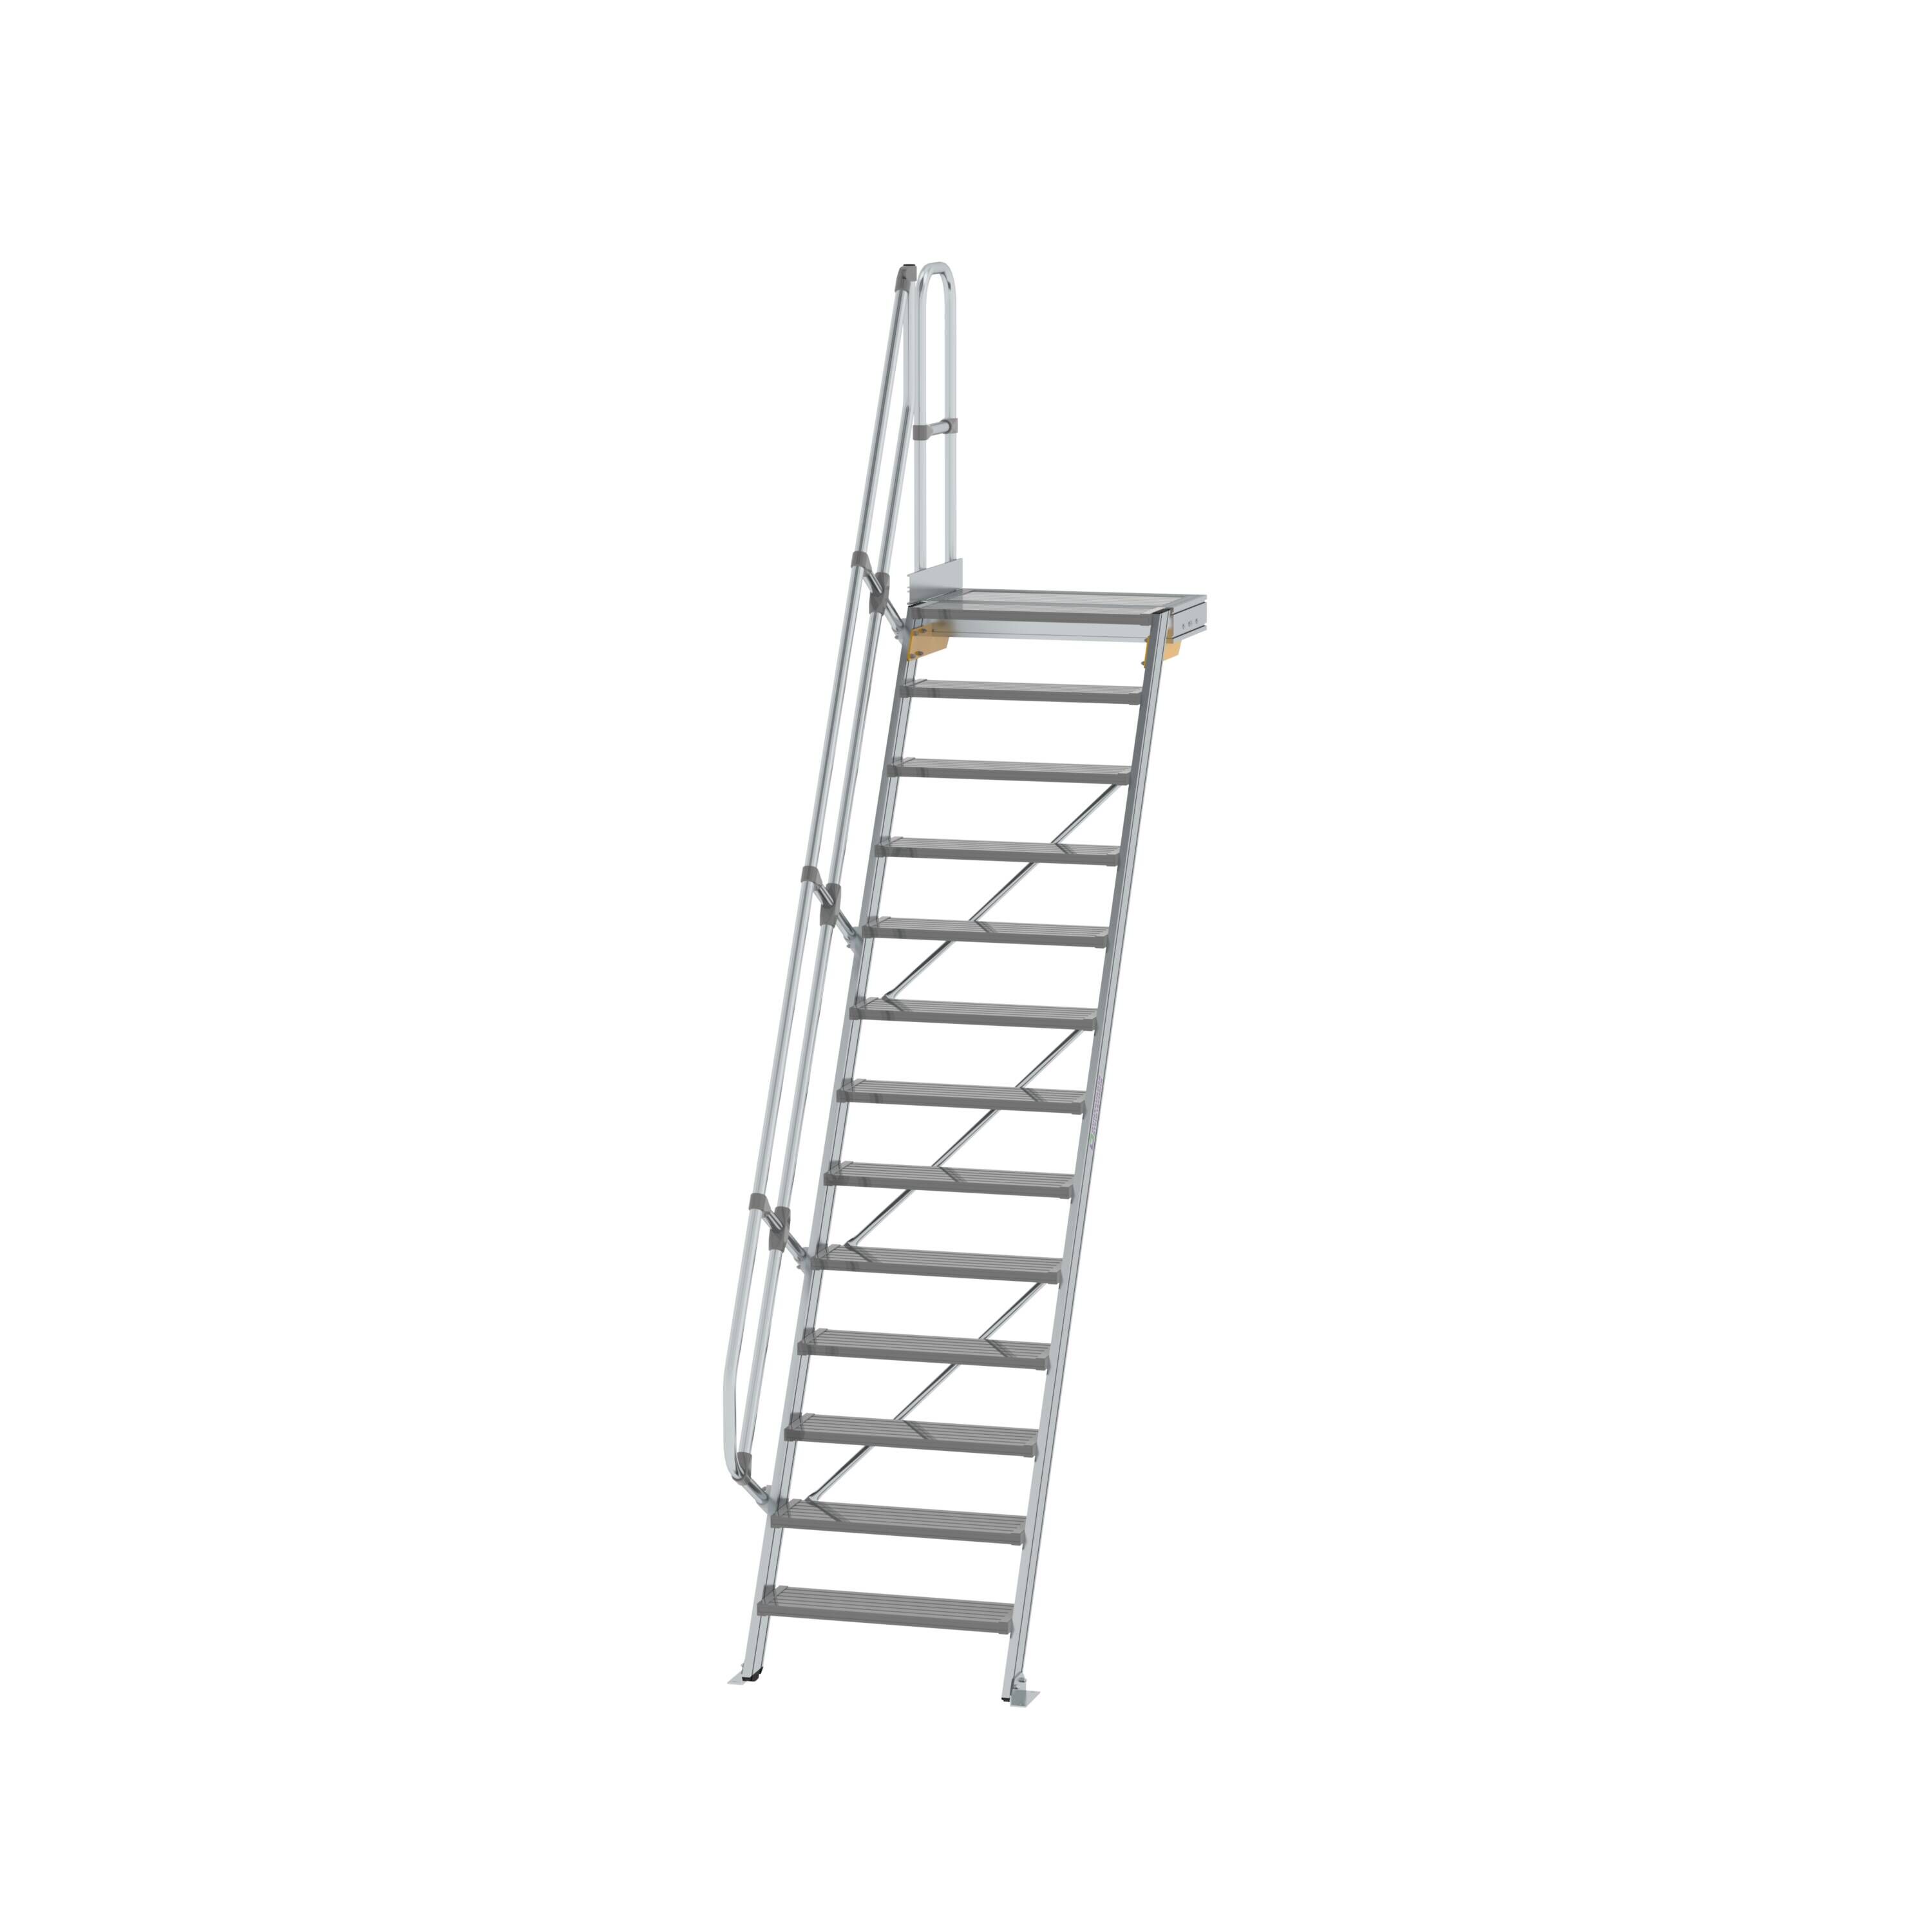 Treppe mit Plattform 60° Stufenbreite 800 mm 13 Stufen Aluminium geriffelt